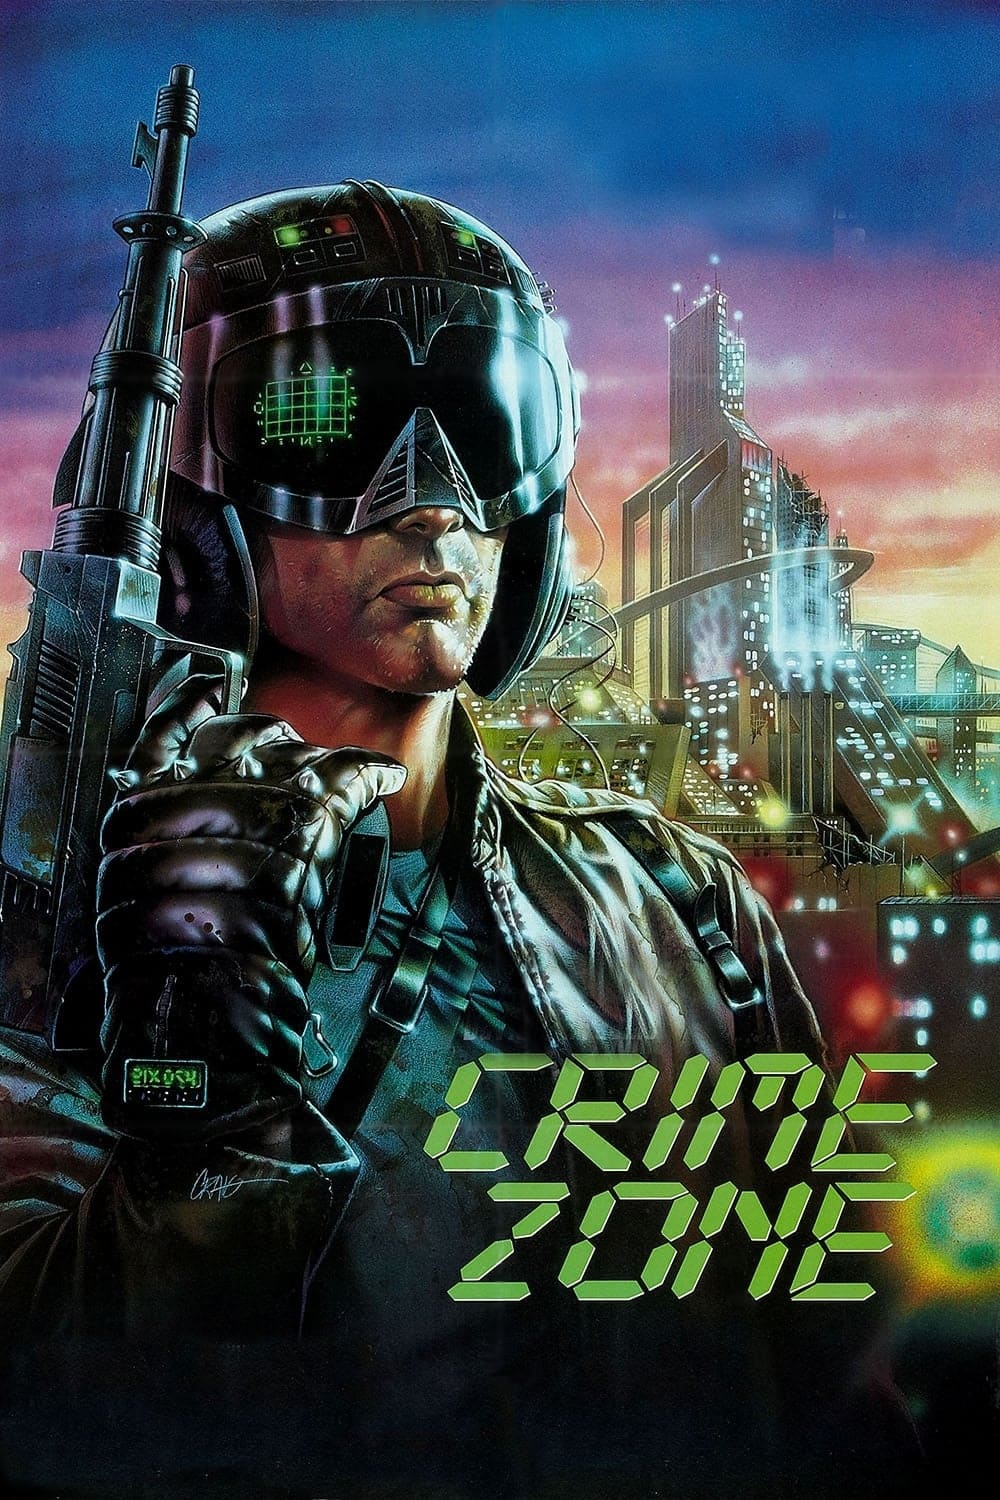 Crime Zone (1989)